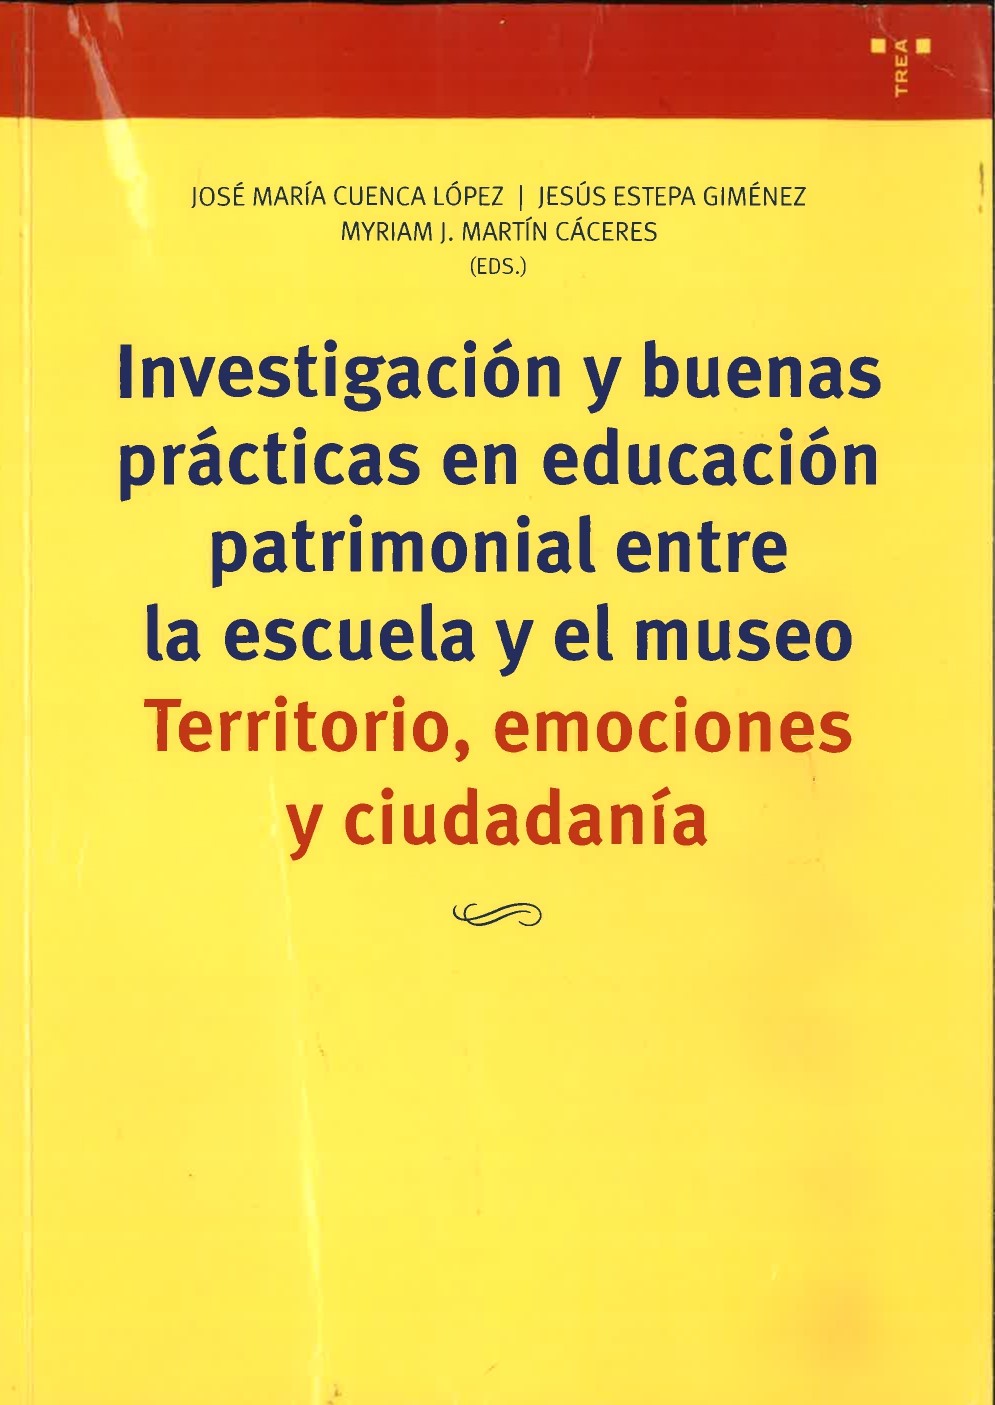 Imagen de portada del libro Investigación y buenas prácticas en educación patrimonial entre la escuela y el museo